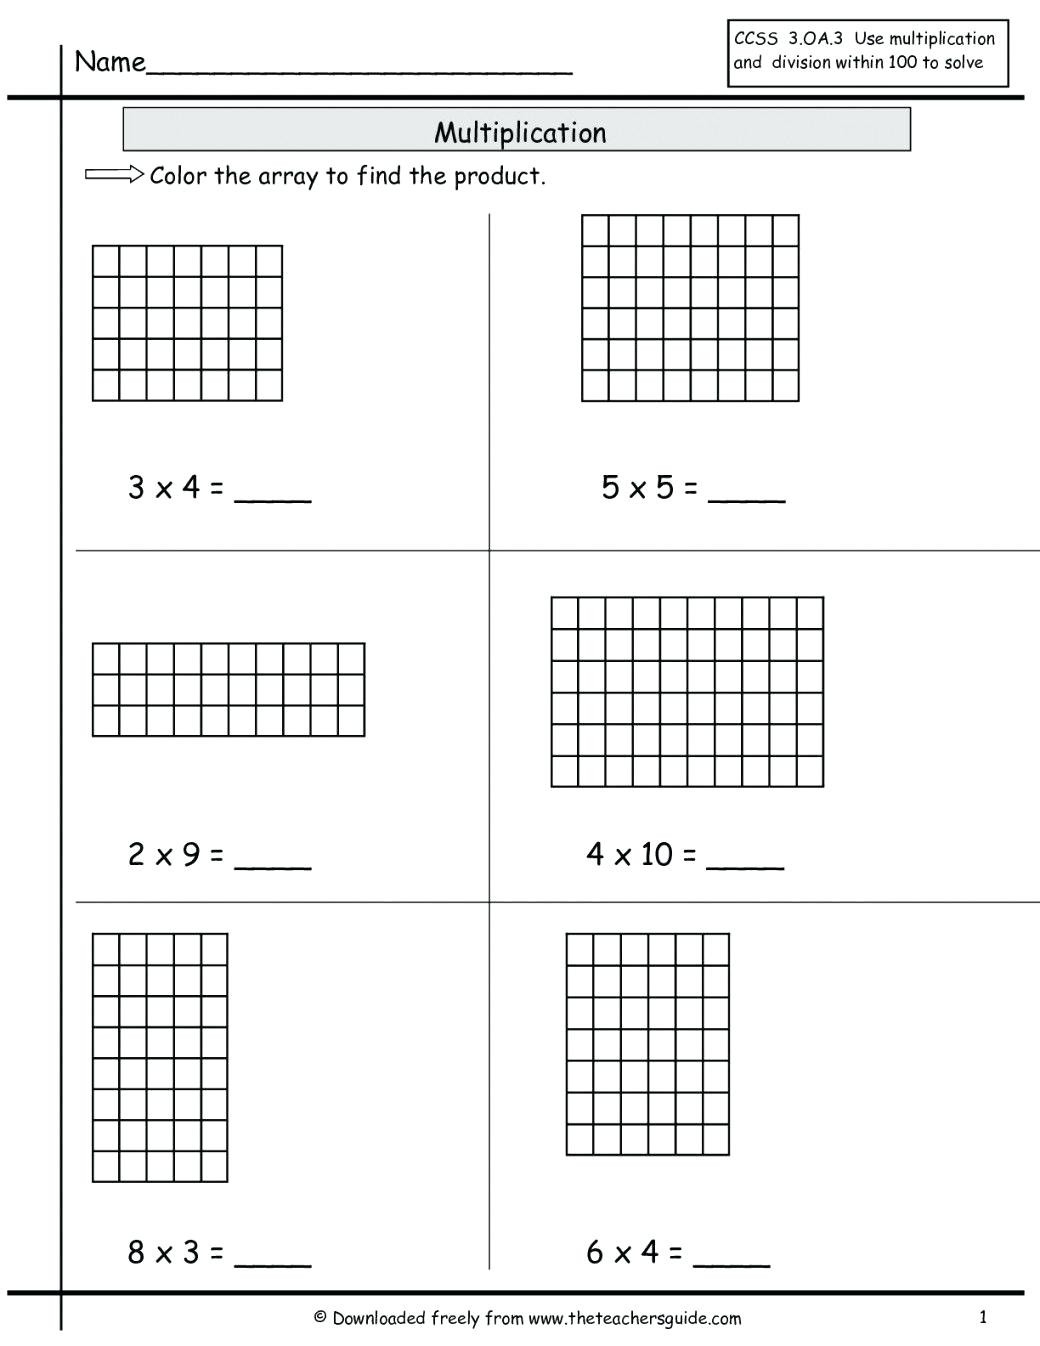 Grid Method Multiplication Worksheets Tu Xu